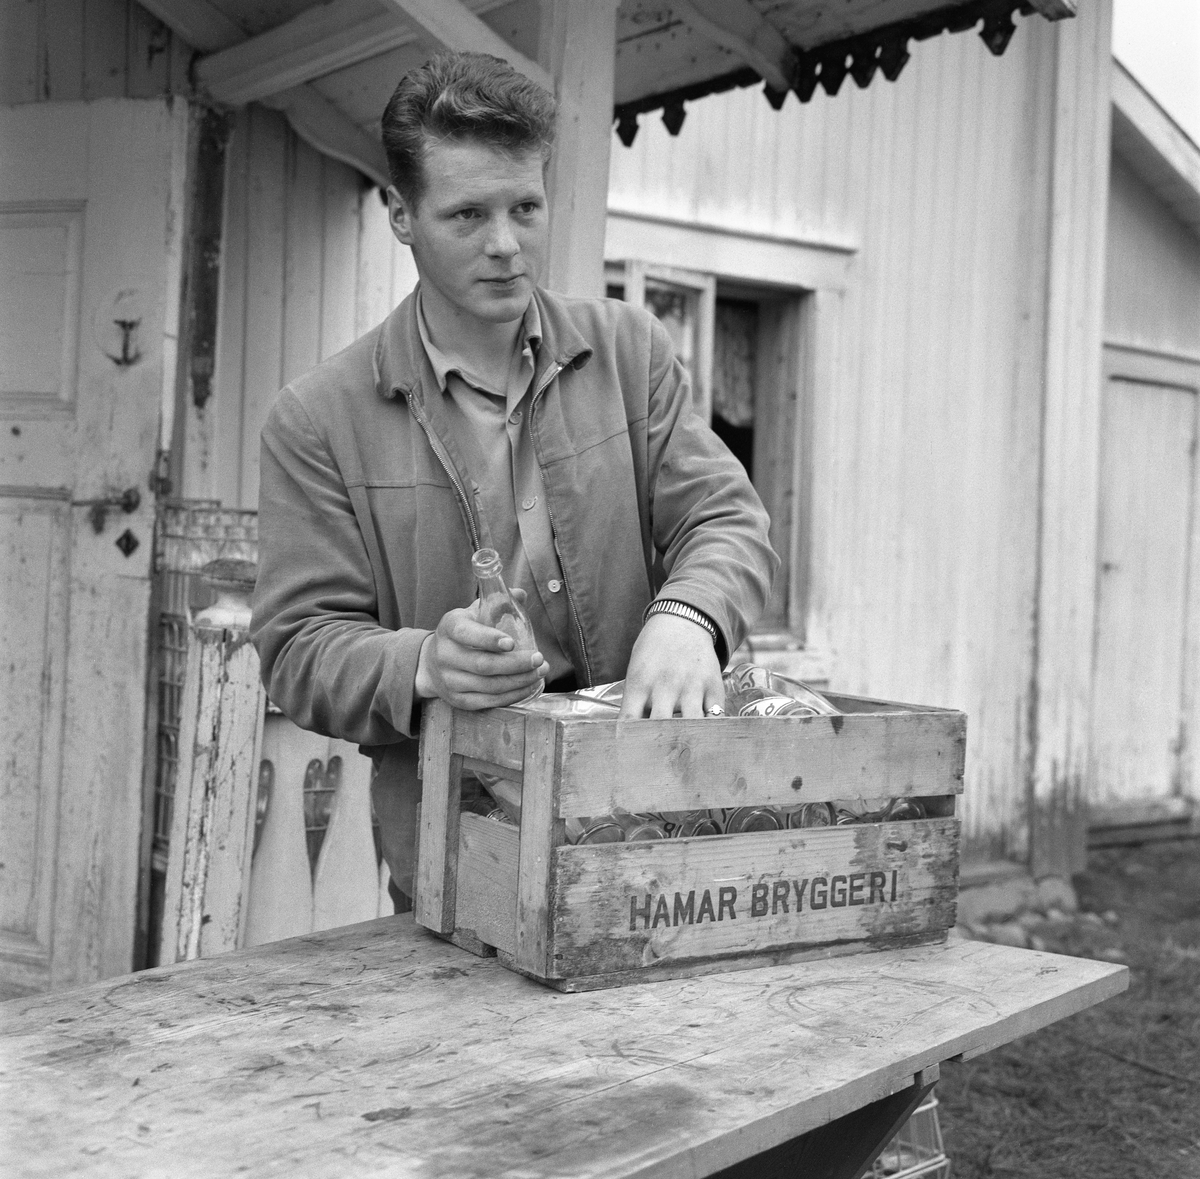 Gutt med ei bruskasse fra Hamar Bryggeri fylt med Soloflasker. Fotografiet skal være tatt i forbindelse med en 4H-leir i Søre Osen, Trysil, Hedmark i 1962.